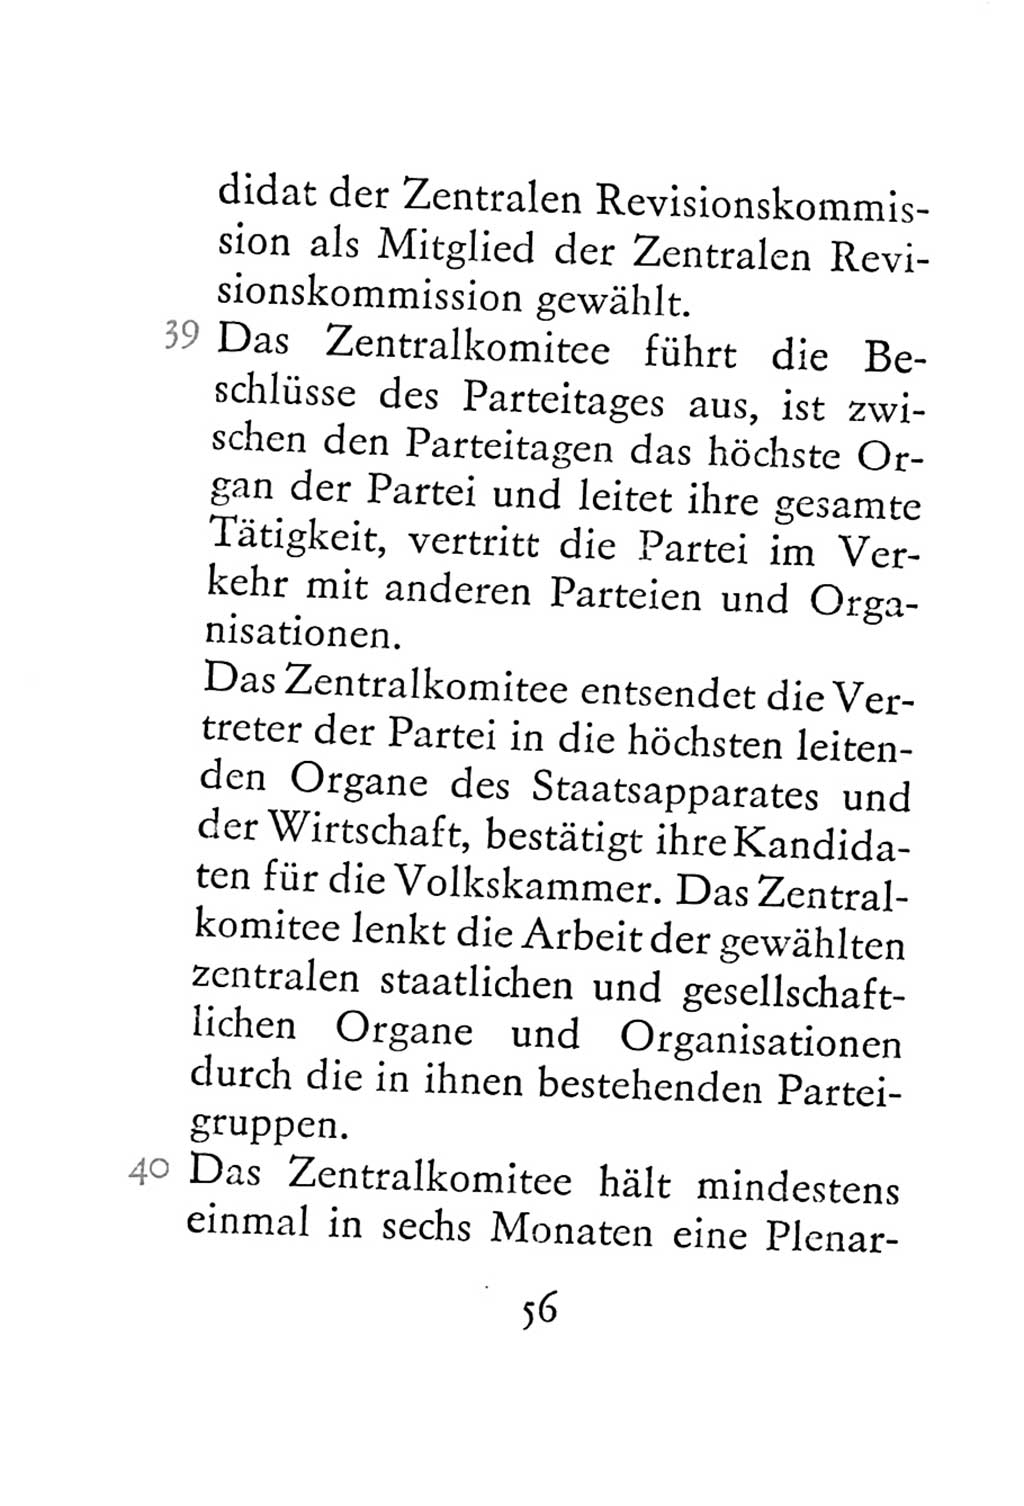 Statut der Sozialistischen Einheitspartei Deutschlands (SED) 1967, Seite 56 (St. SED DDR 1967, S. 56)